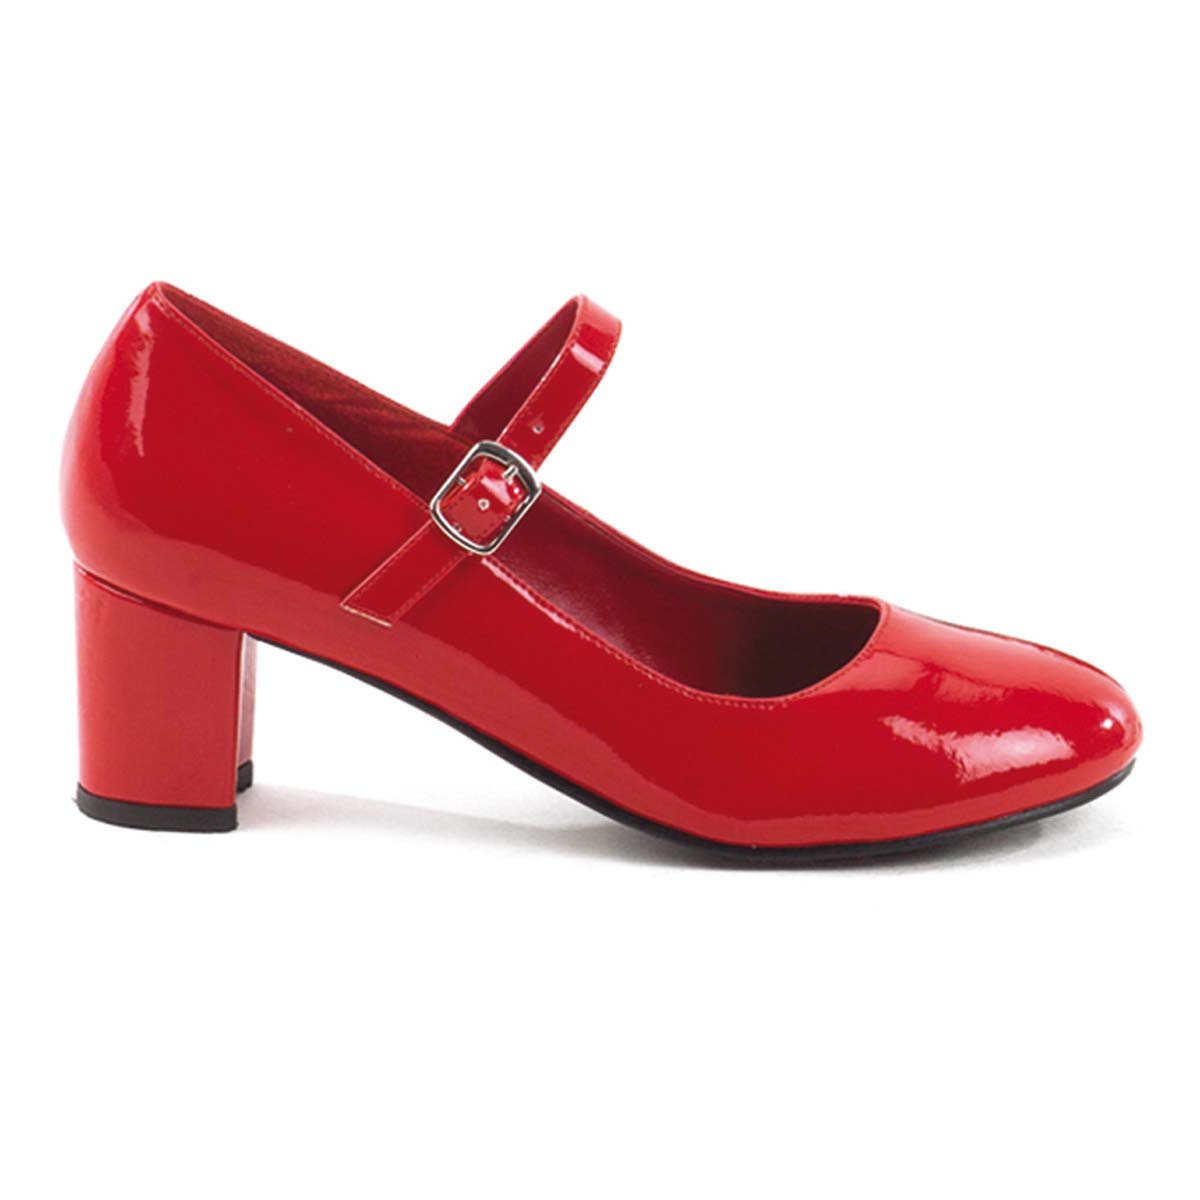 Pleaser Funtasma Schoolgirl-50 - Red Patent in Sexy Heels & Platforms ...